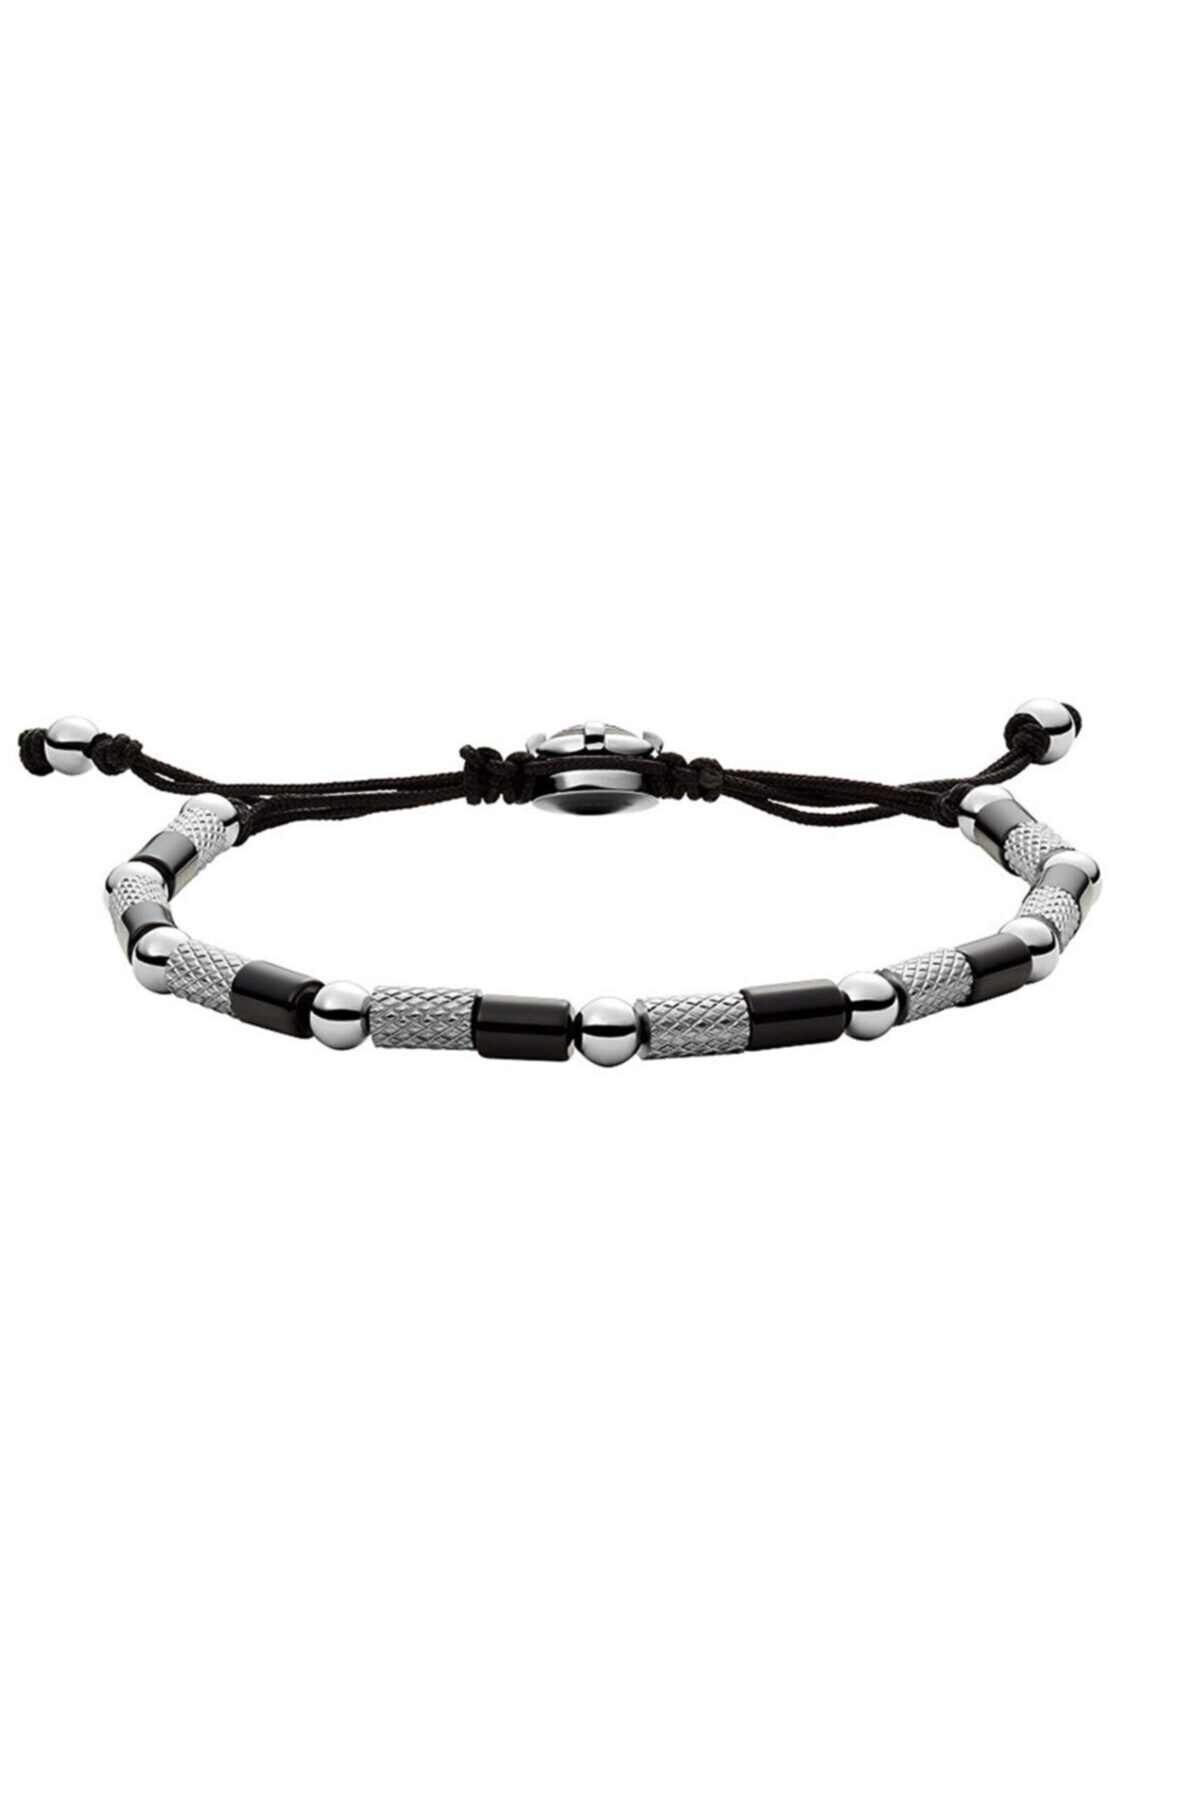 دستبند مردانه نقره ای برند diesel DJDX1311-040